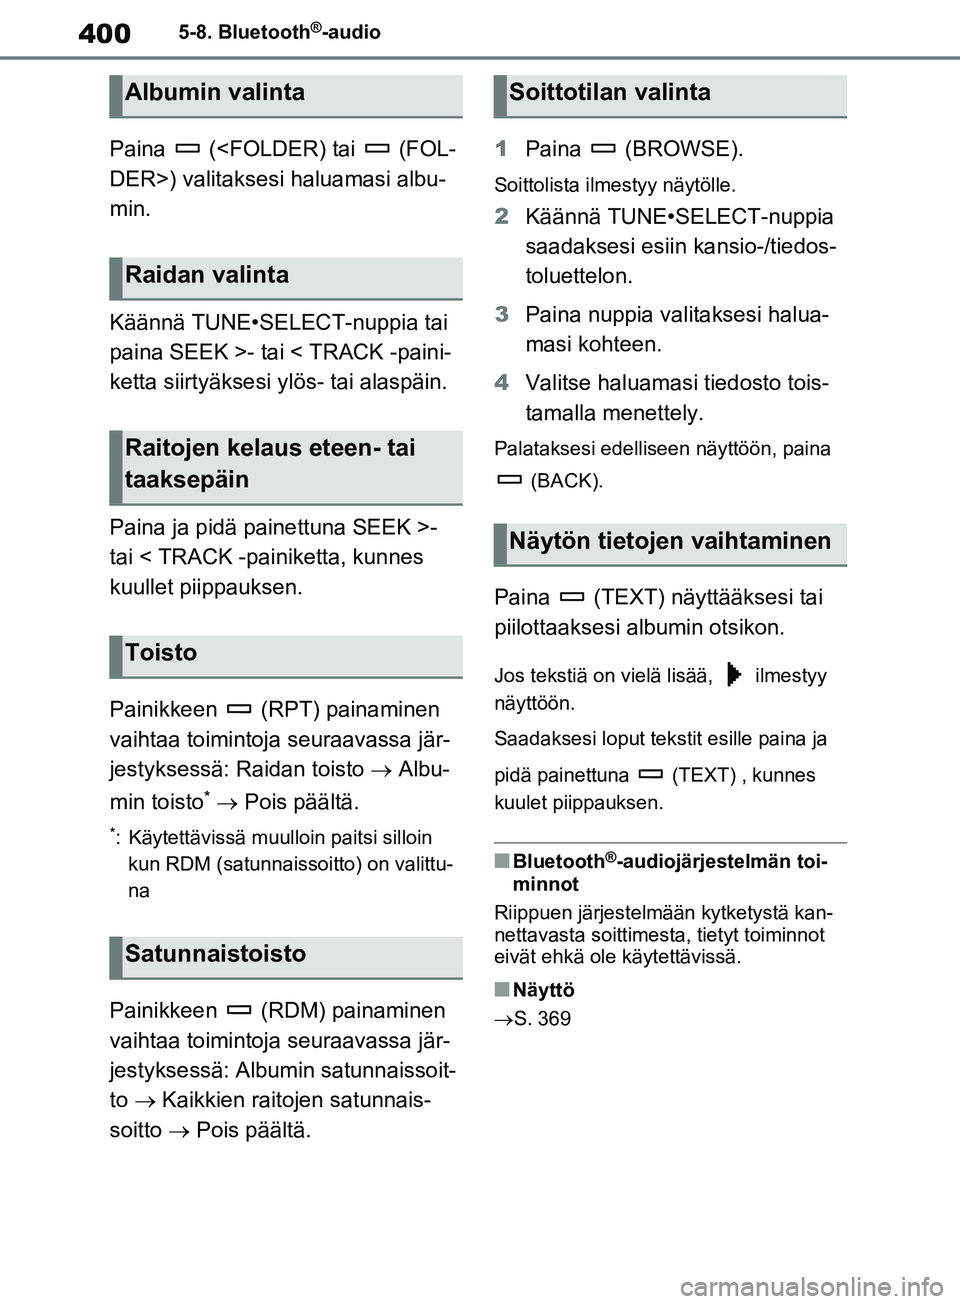 TOYOTA RAV4 2020  Omistajan Käsikirja (in Finnish) 4005-8. Bluetooth®-audio
Paina   (<FOLDER) tai   (FOL-
DER>) valitaksesi haluamasi albu-
min.
Käännä TUNE•SELECT-nuppia tai 
paina SEEK >- tai < TRACK -paini-
ketta siirtyäksesi ylös- tai alas